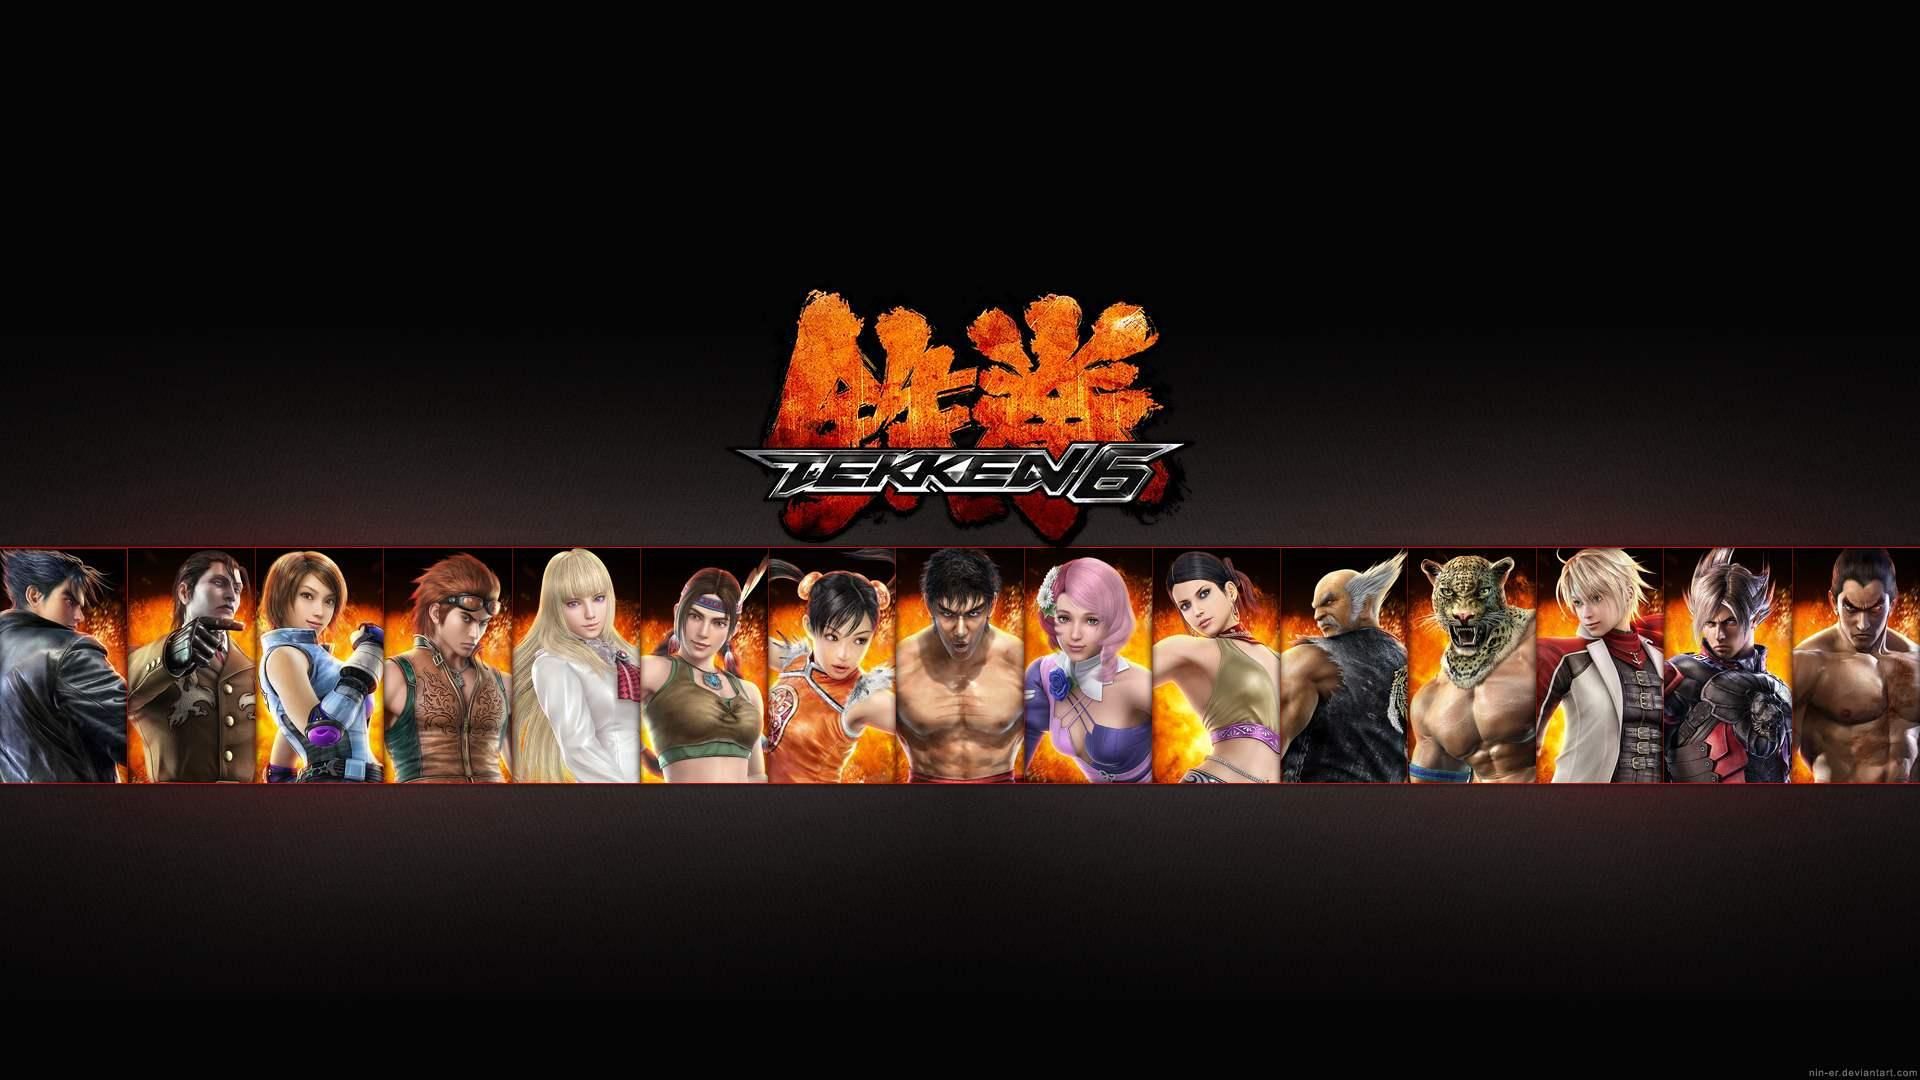 Tekken 6 HD desktop wallpaper : Widescreen : High Definition ...